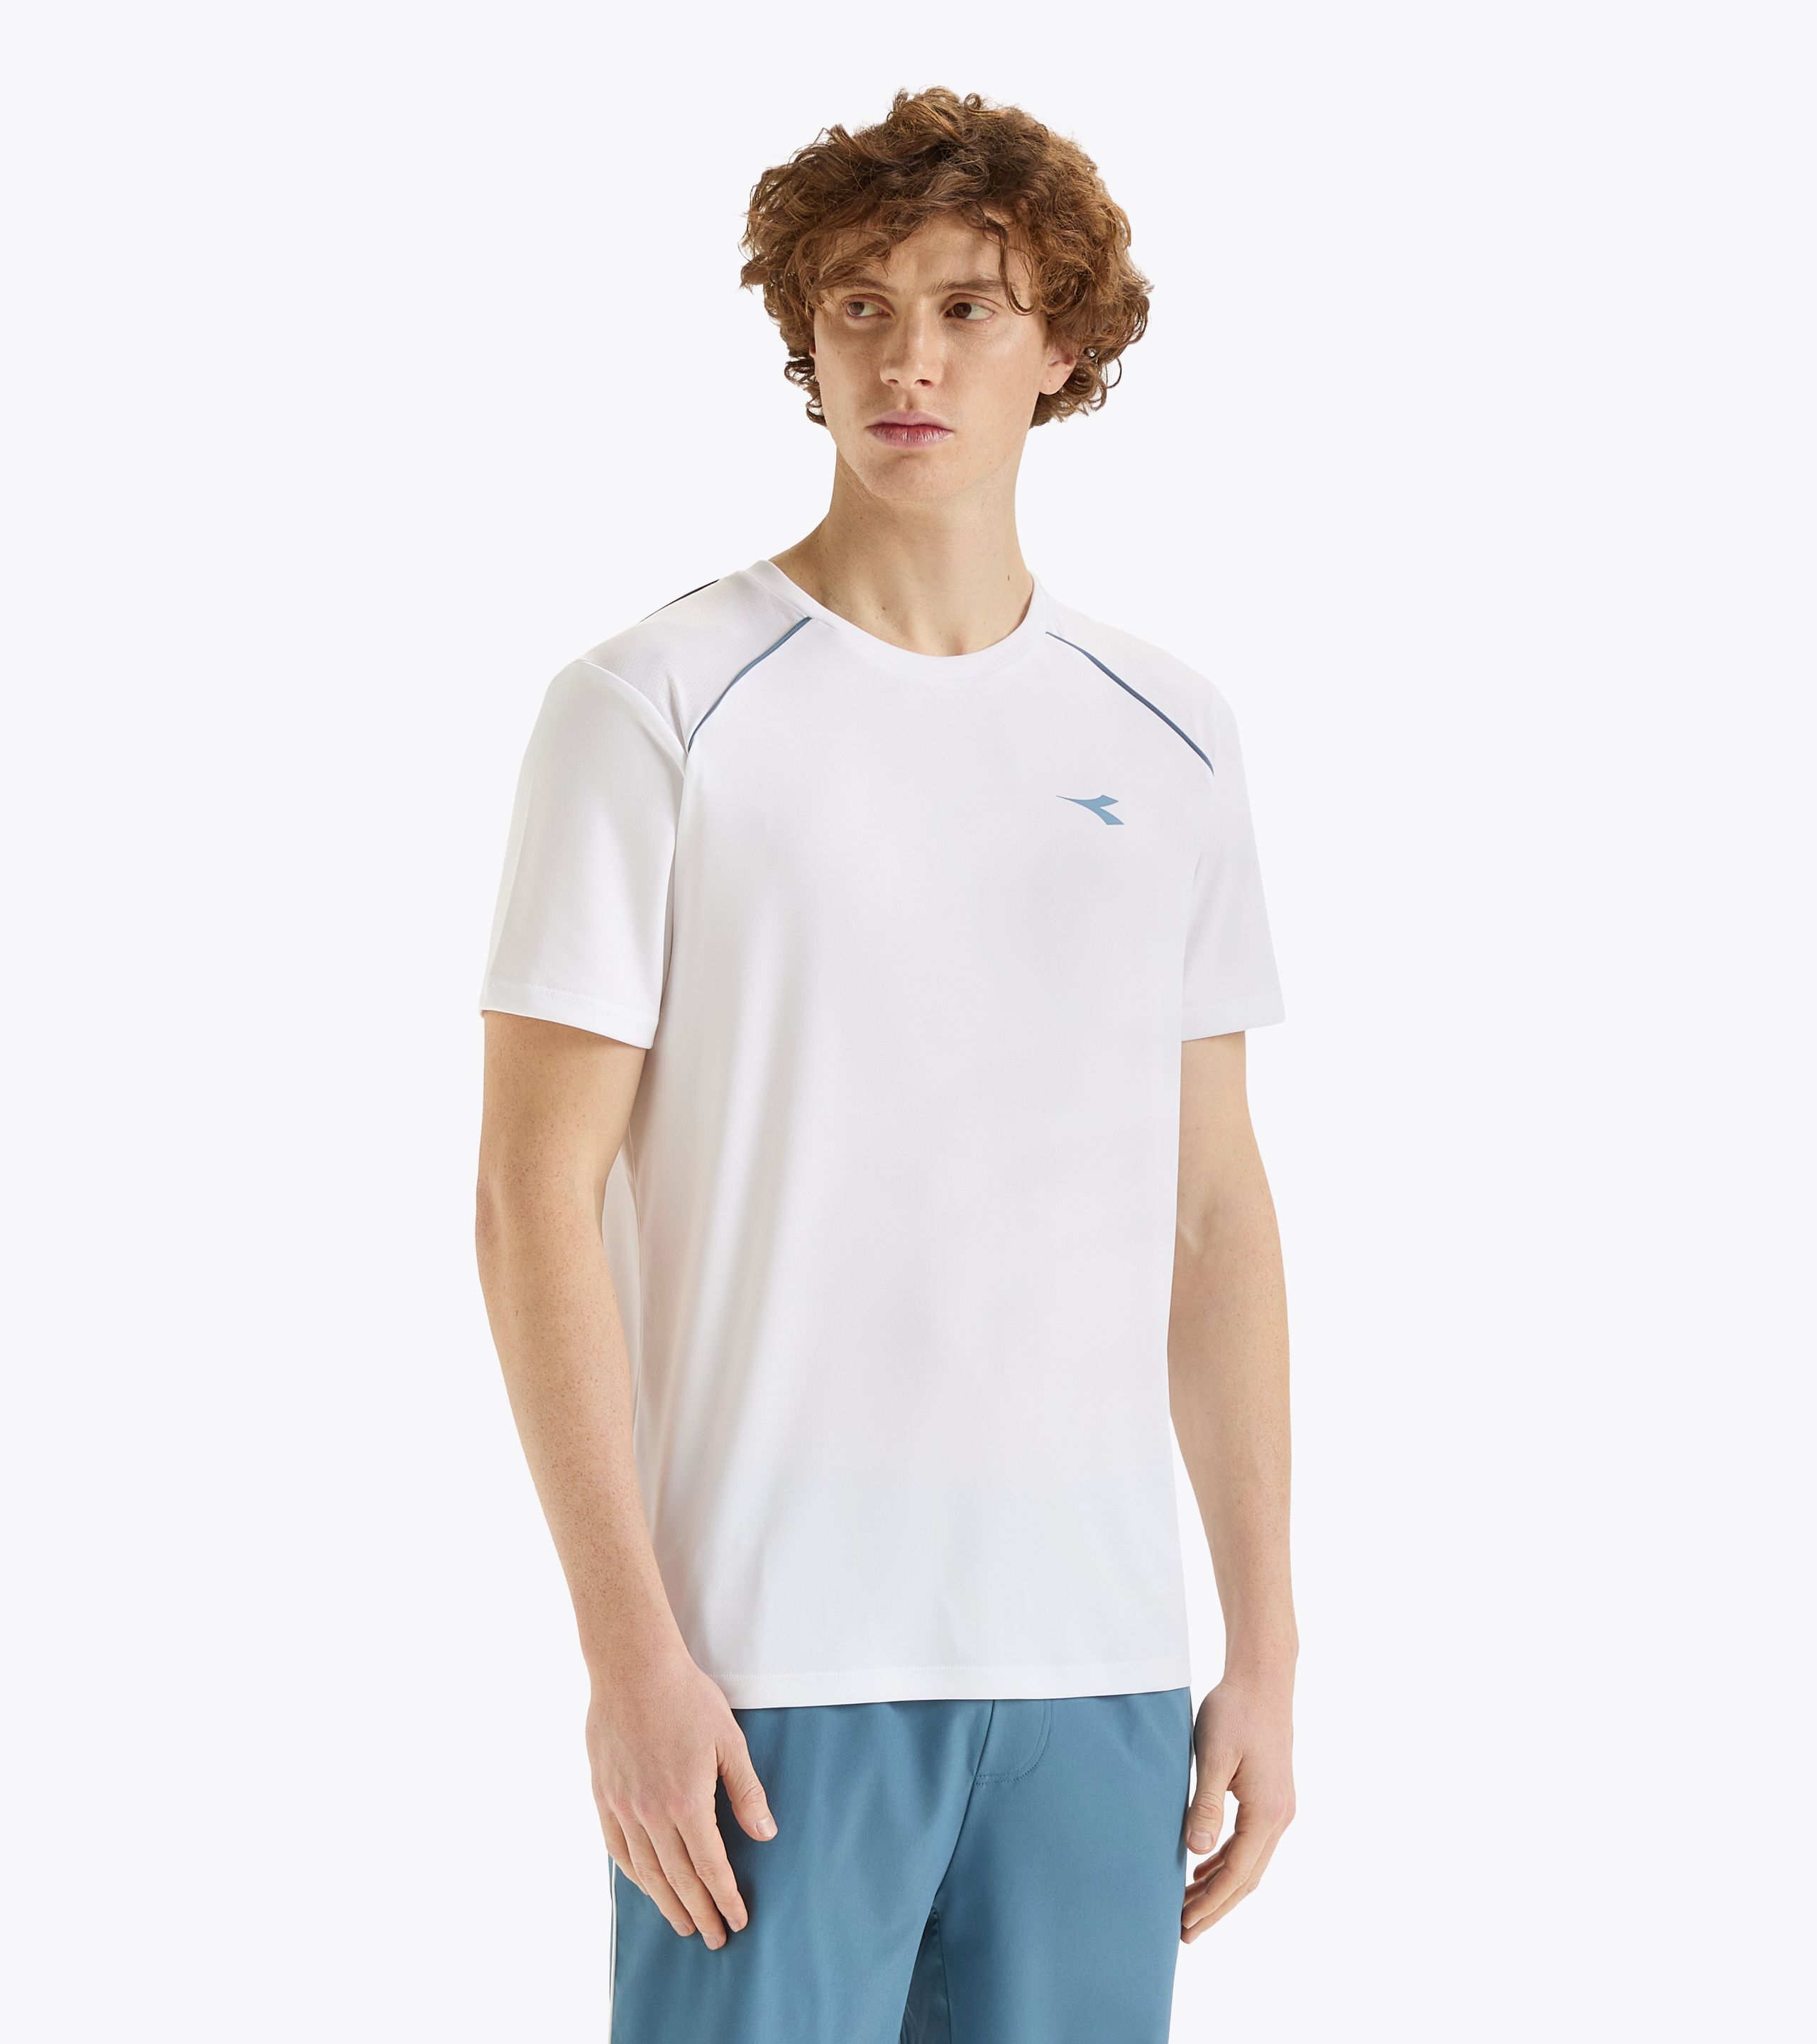 SS T-SHIRT CORE Tennis t-shirt - Men's - Diadora Online Store